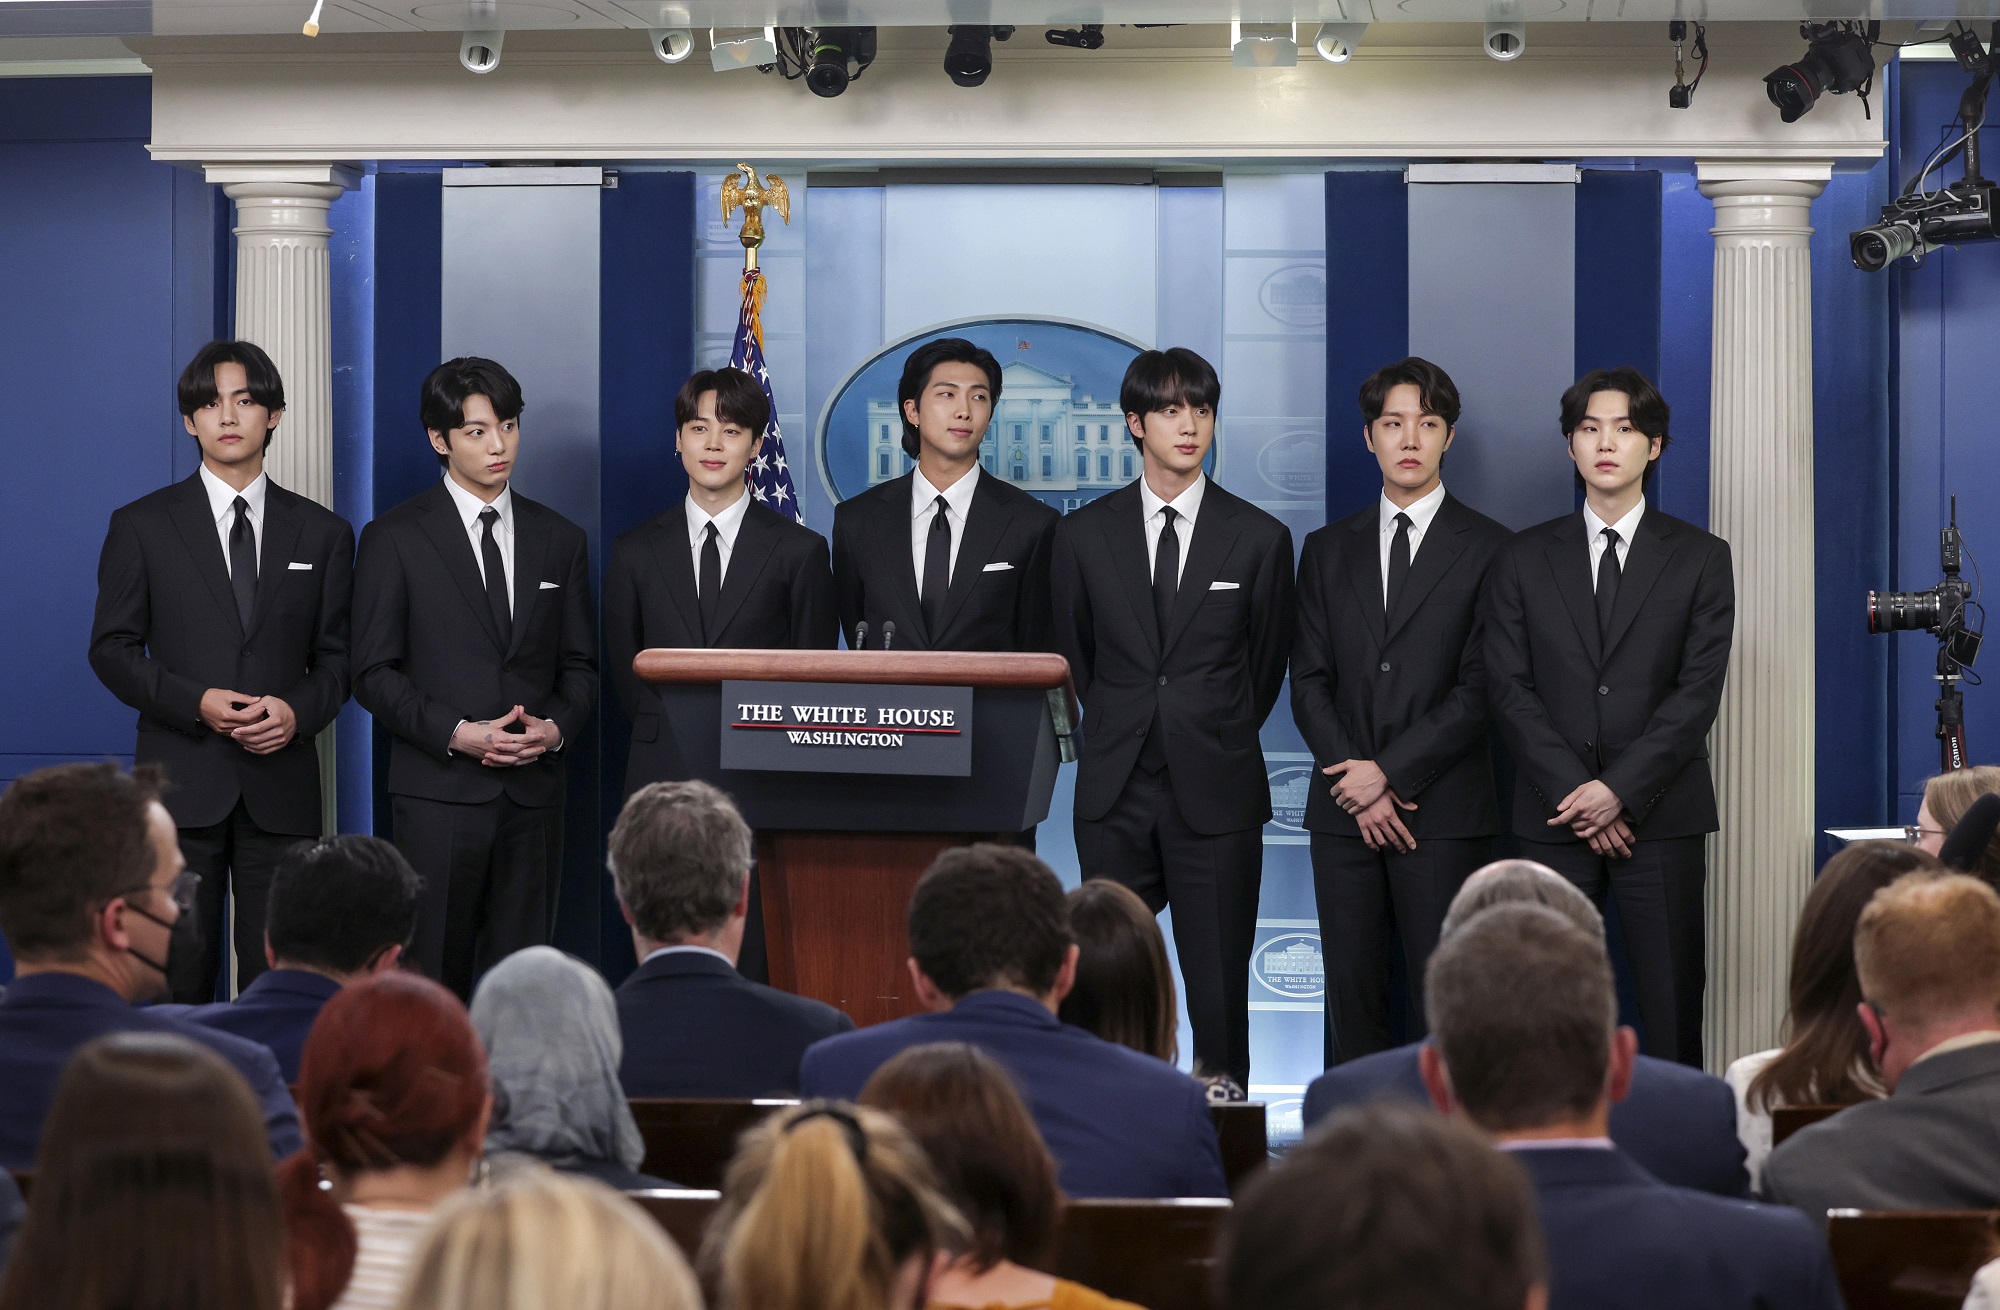 V, Jungkook, Jimin, RM, Jin, J-Hope, and Suga of BTS at the White House